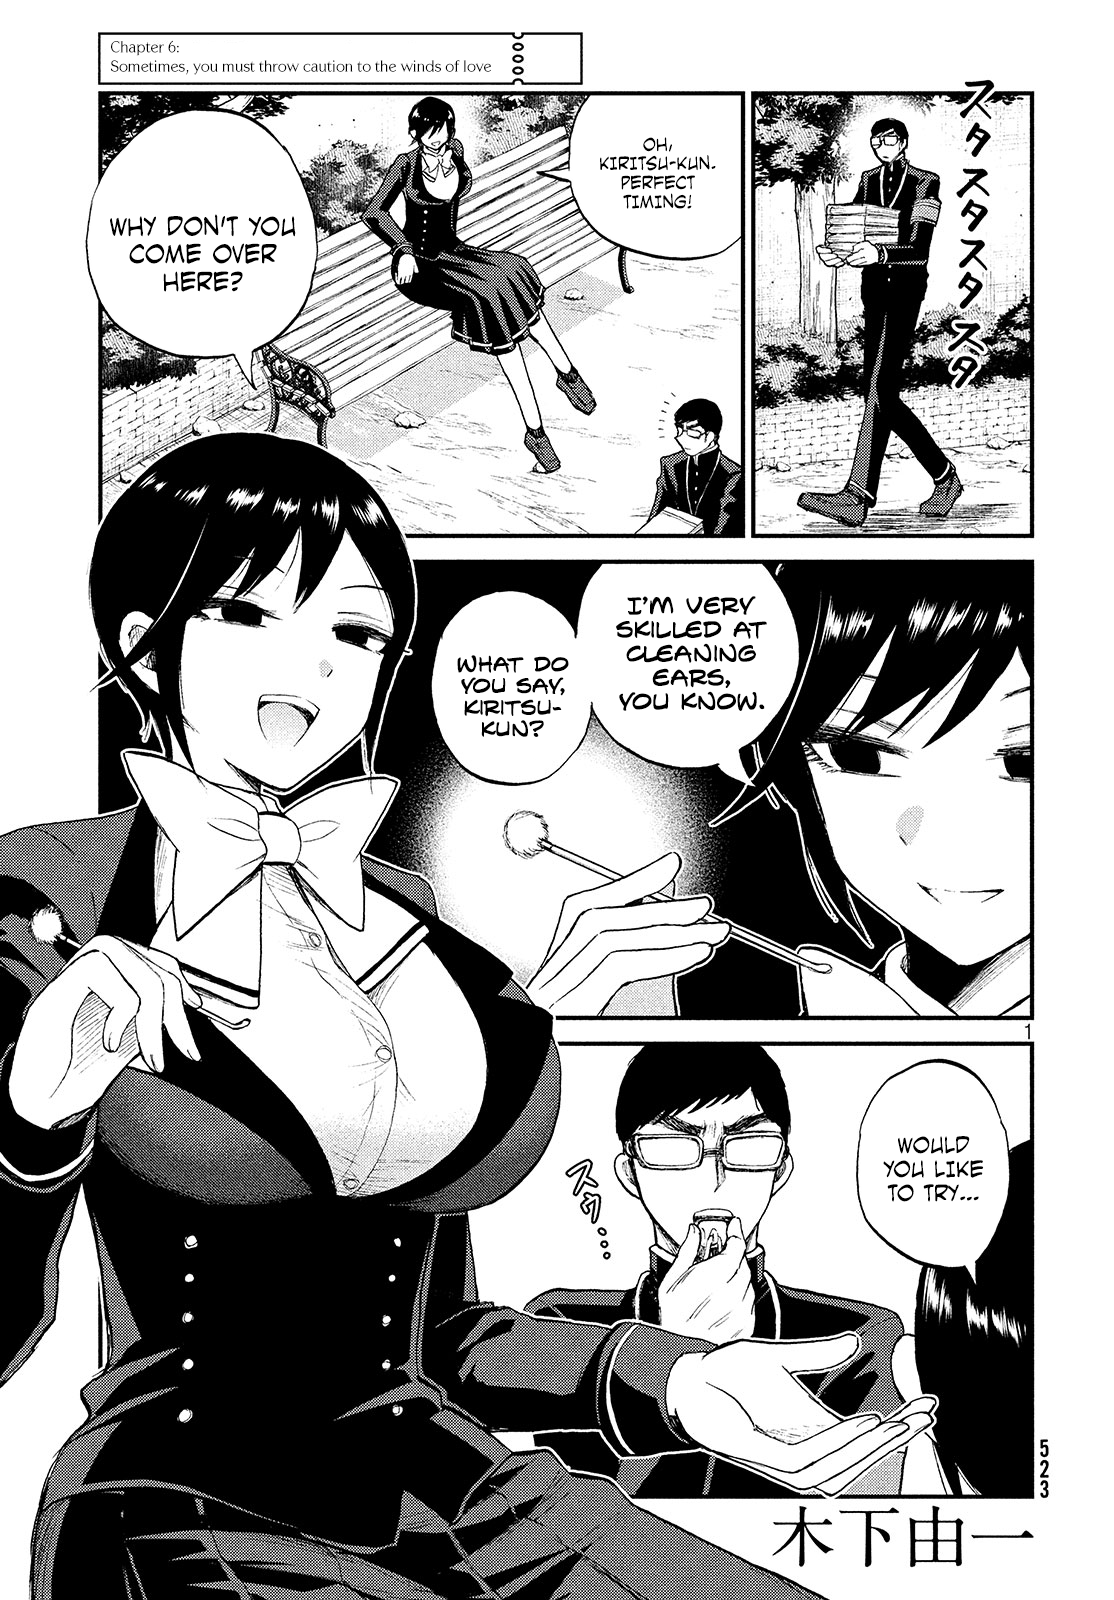 Arakure Ojousama Wa Monmon Shiteiru - Page 1